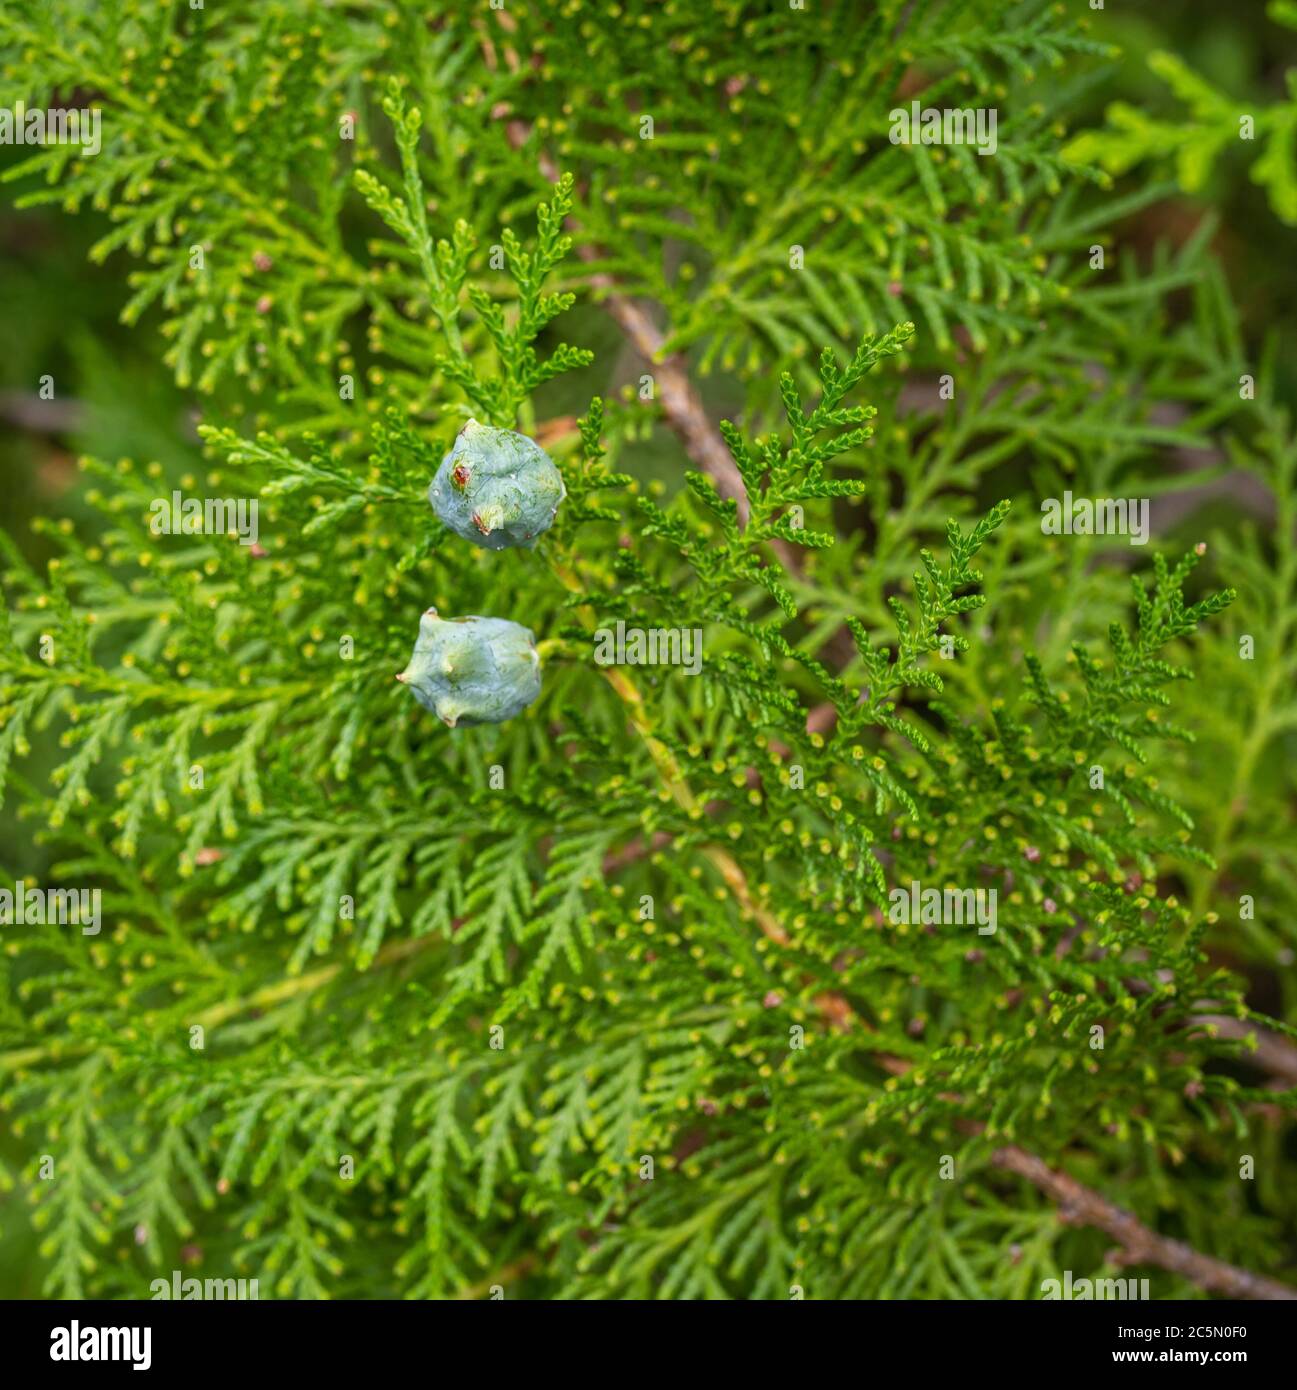 Chinese Arborvitae (Platycladus orientalis), twig with cones Stock Photo